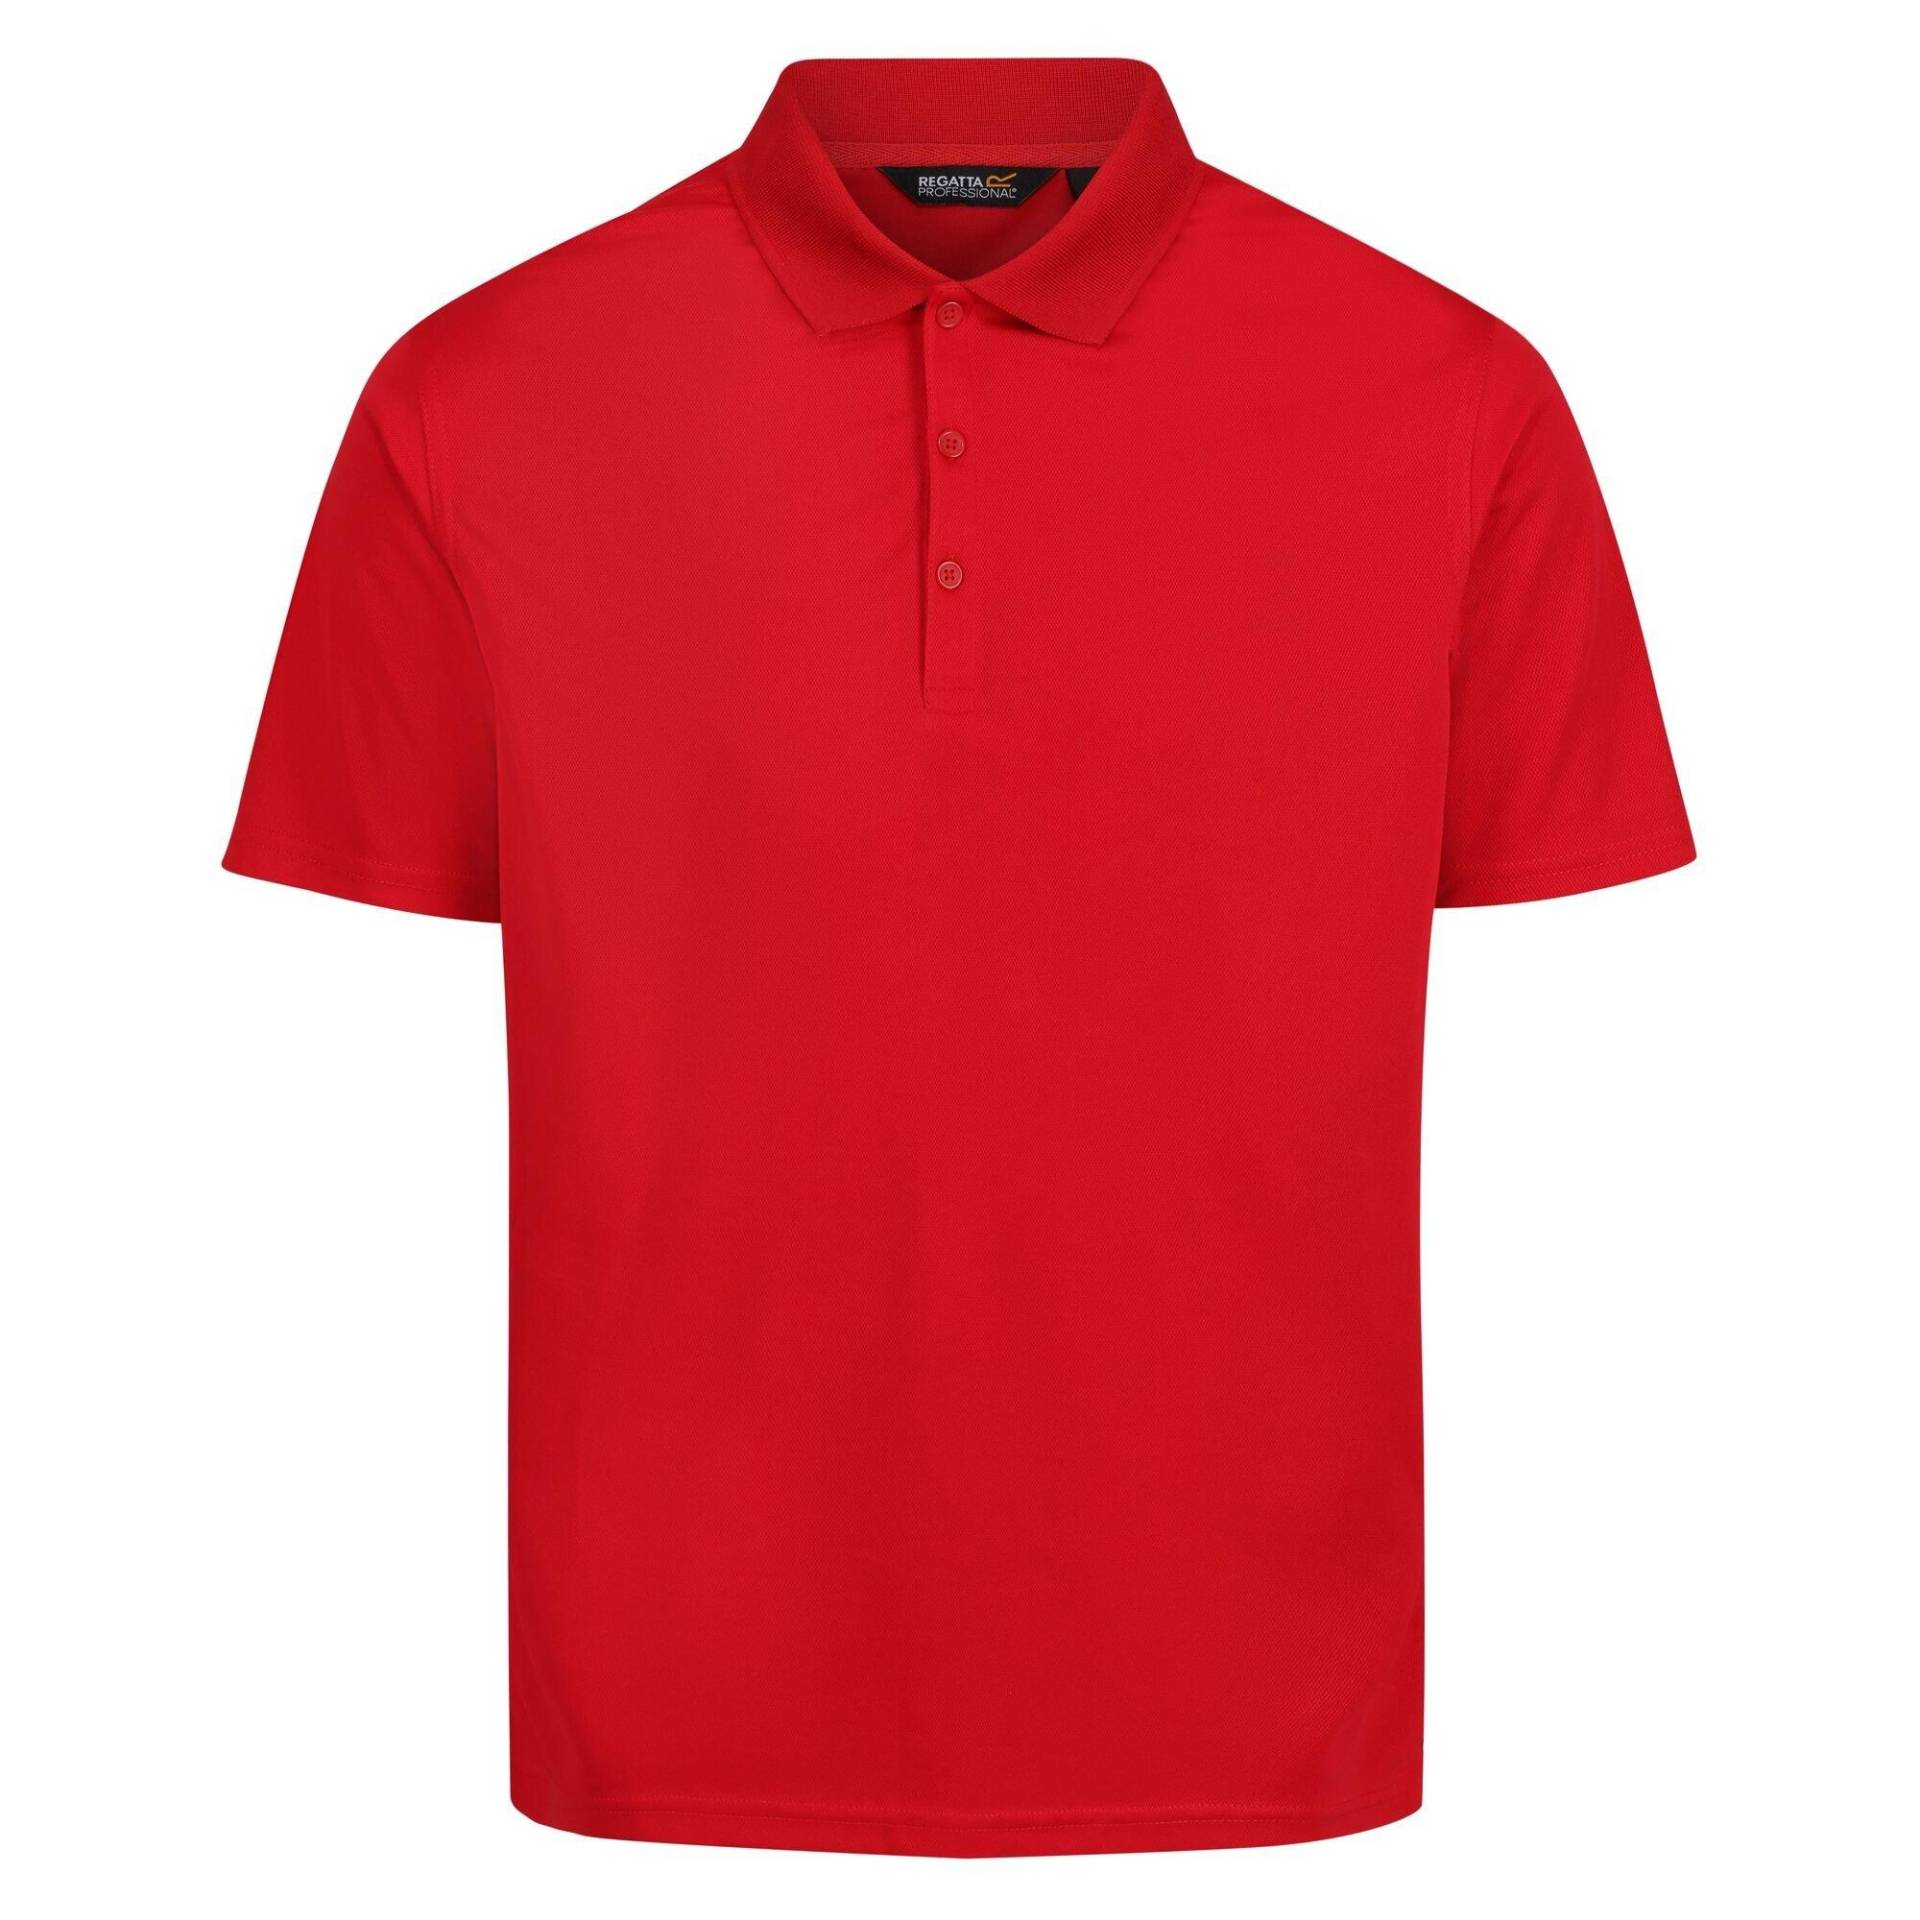 Pro Poloshirt Feuchtigkeitsabweisend Herren Rot Bunt XL von Regatta